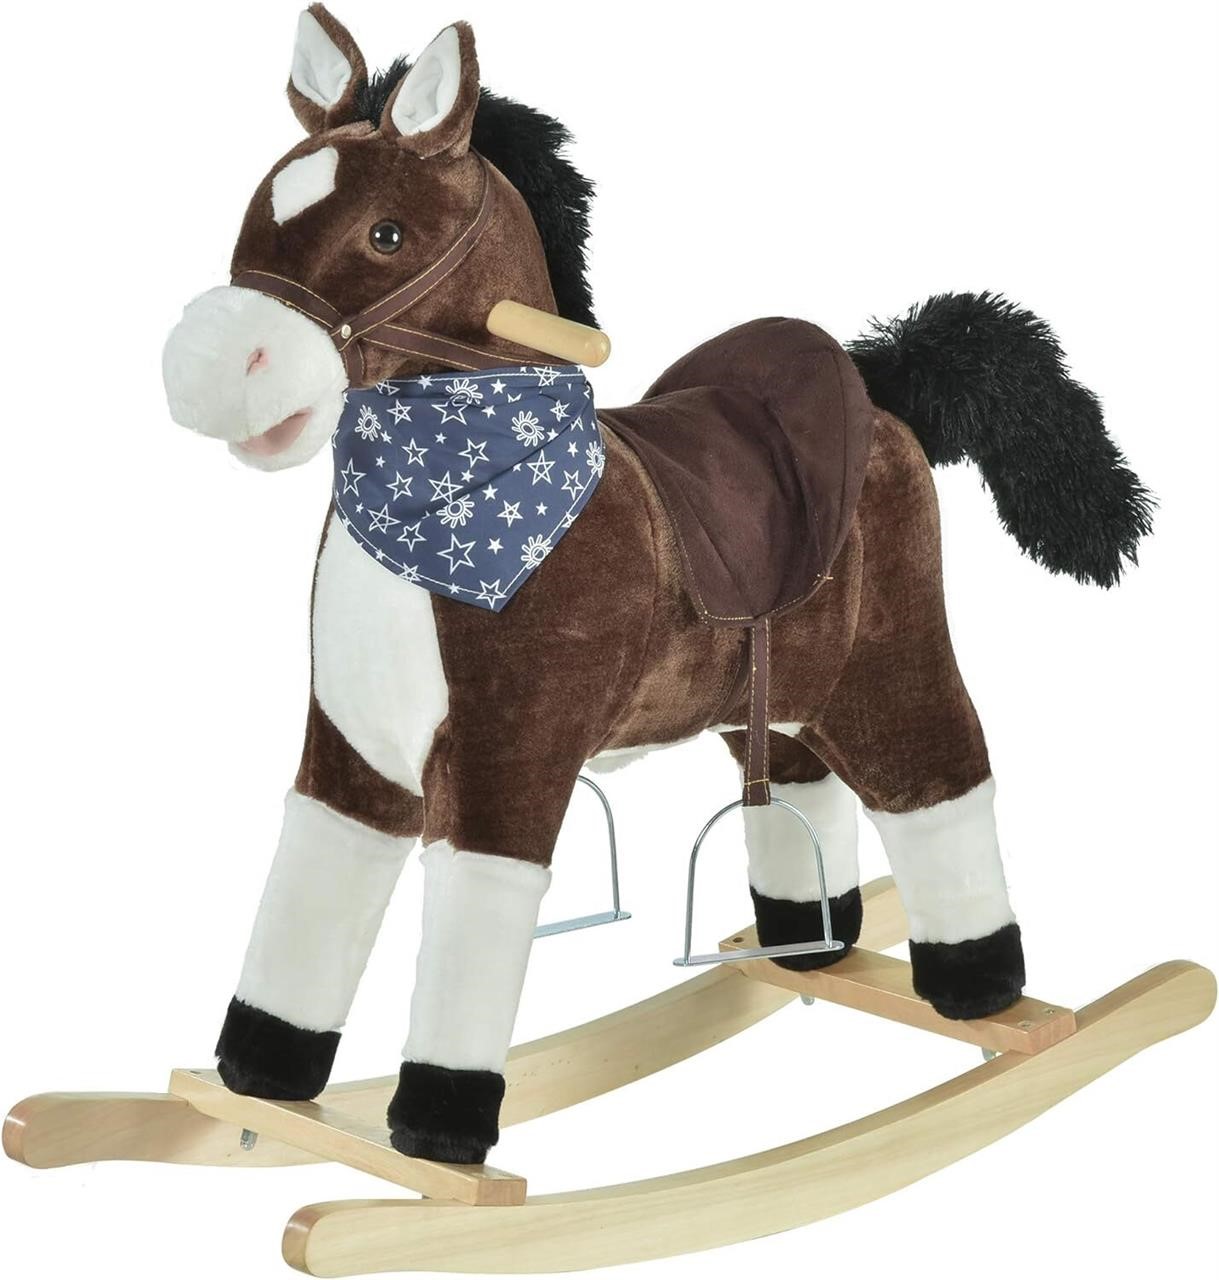 Qaba Kids Plush Ride-On Rocking Horse Toy, Brown